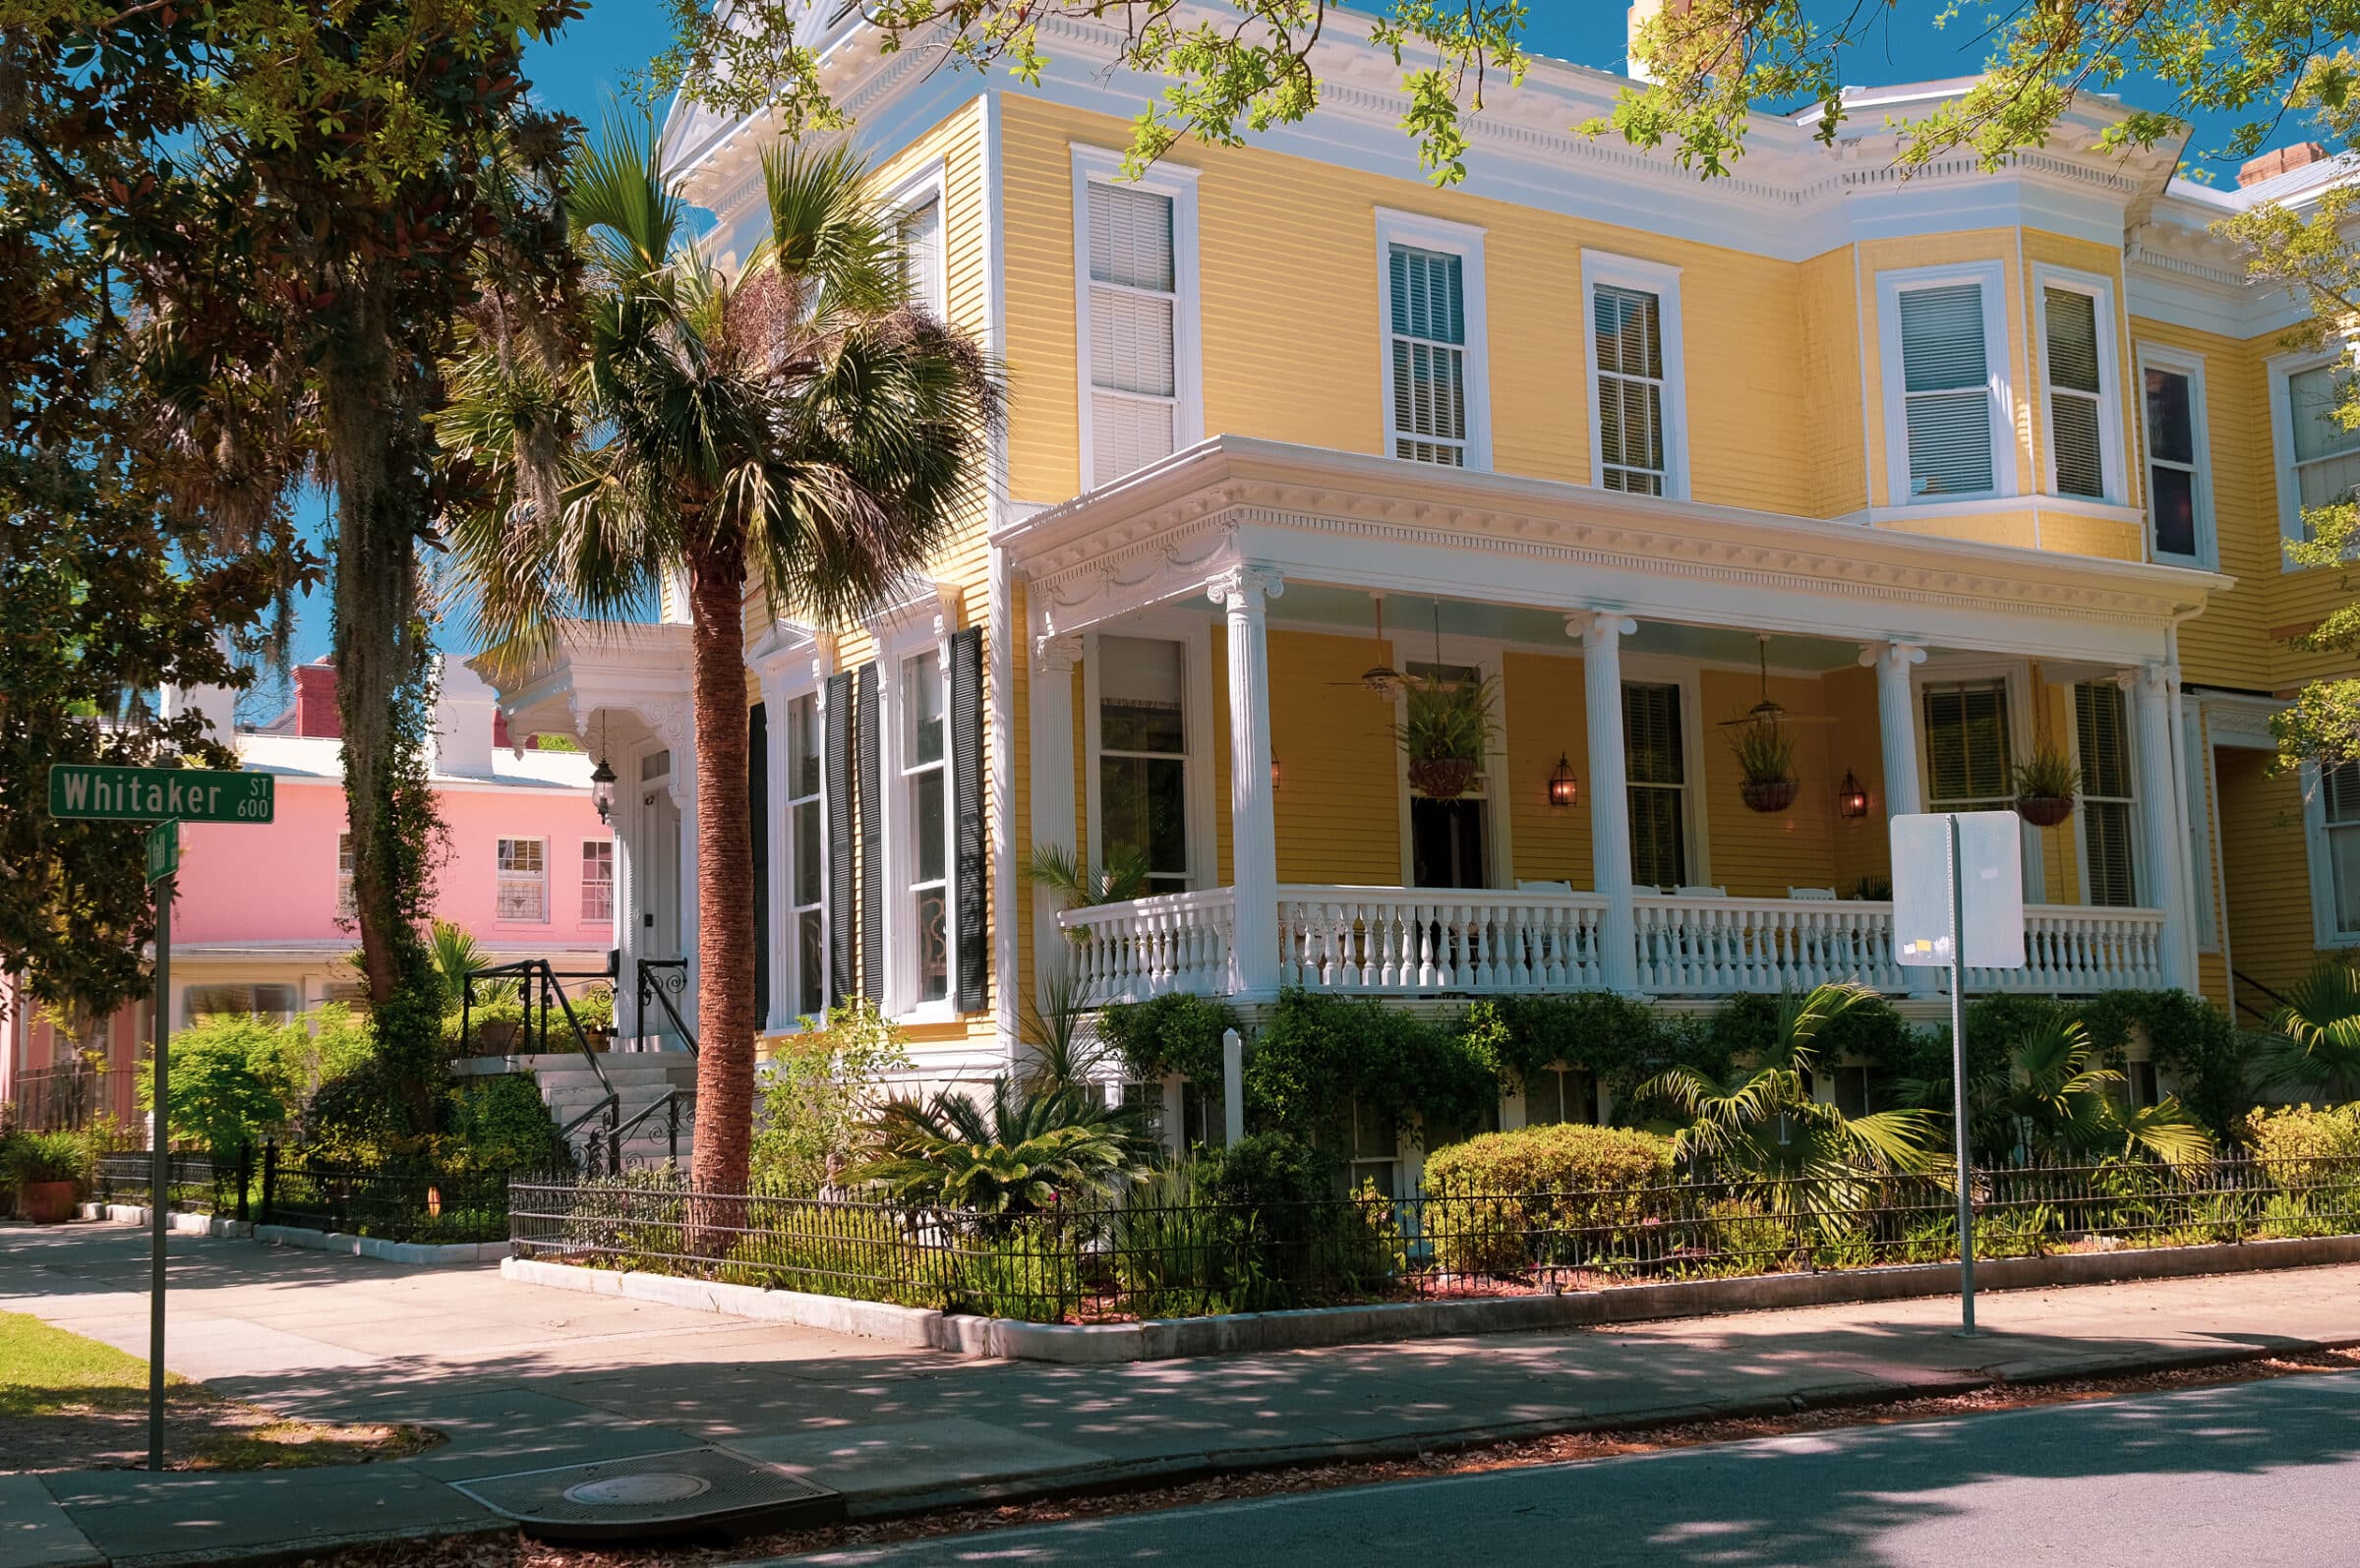 Uno dei tanti bei palazzi coloniali di Savannah | Mette in risalto roadtrip New York-Key West